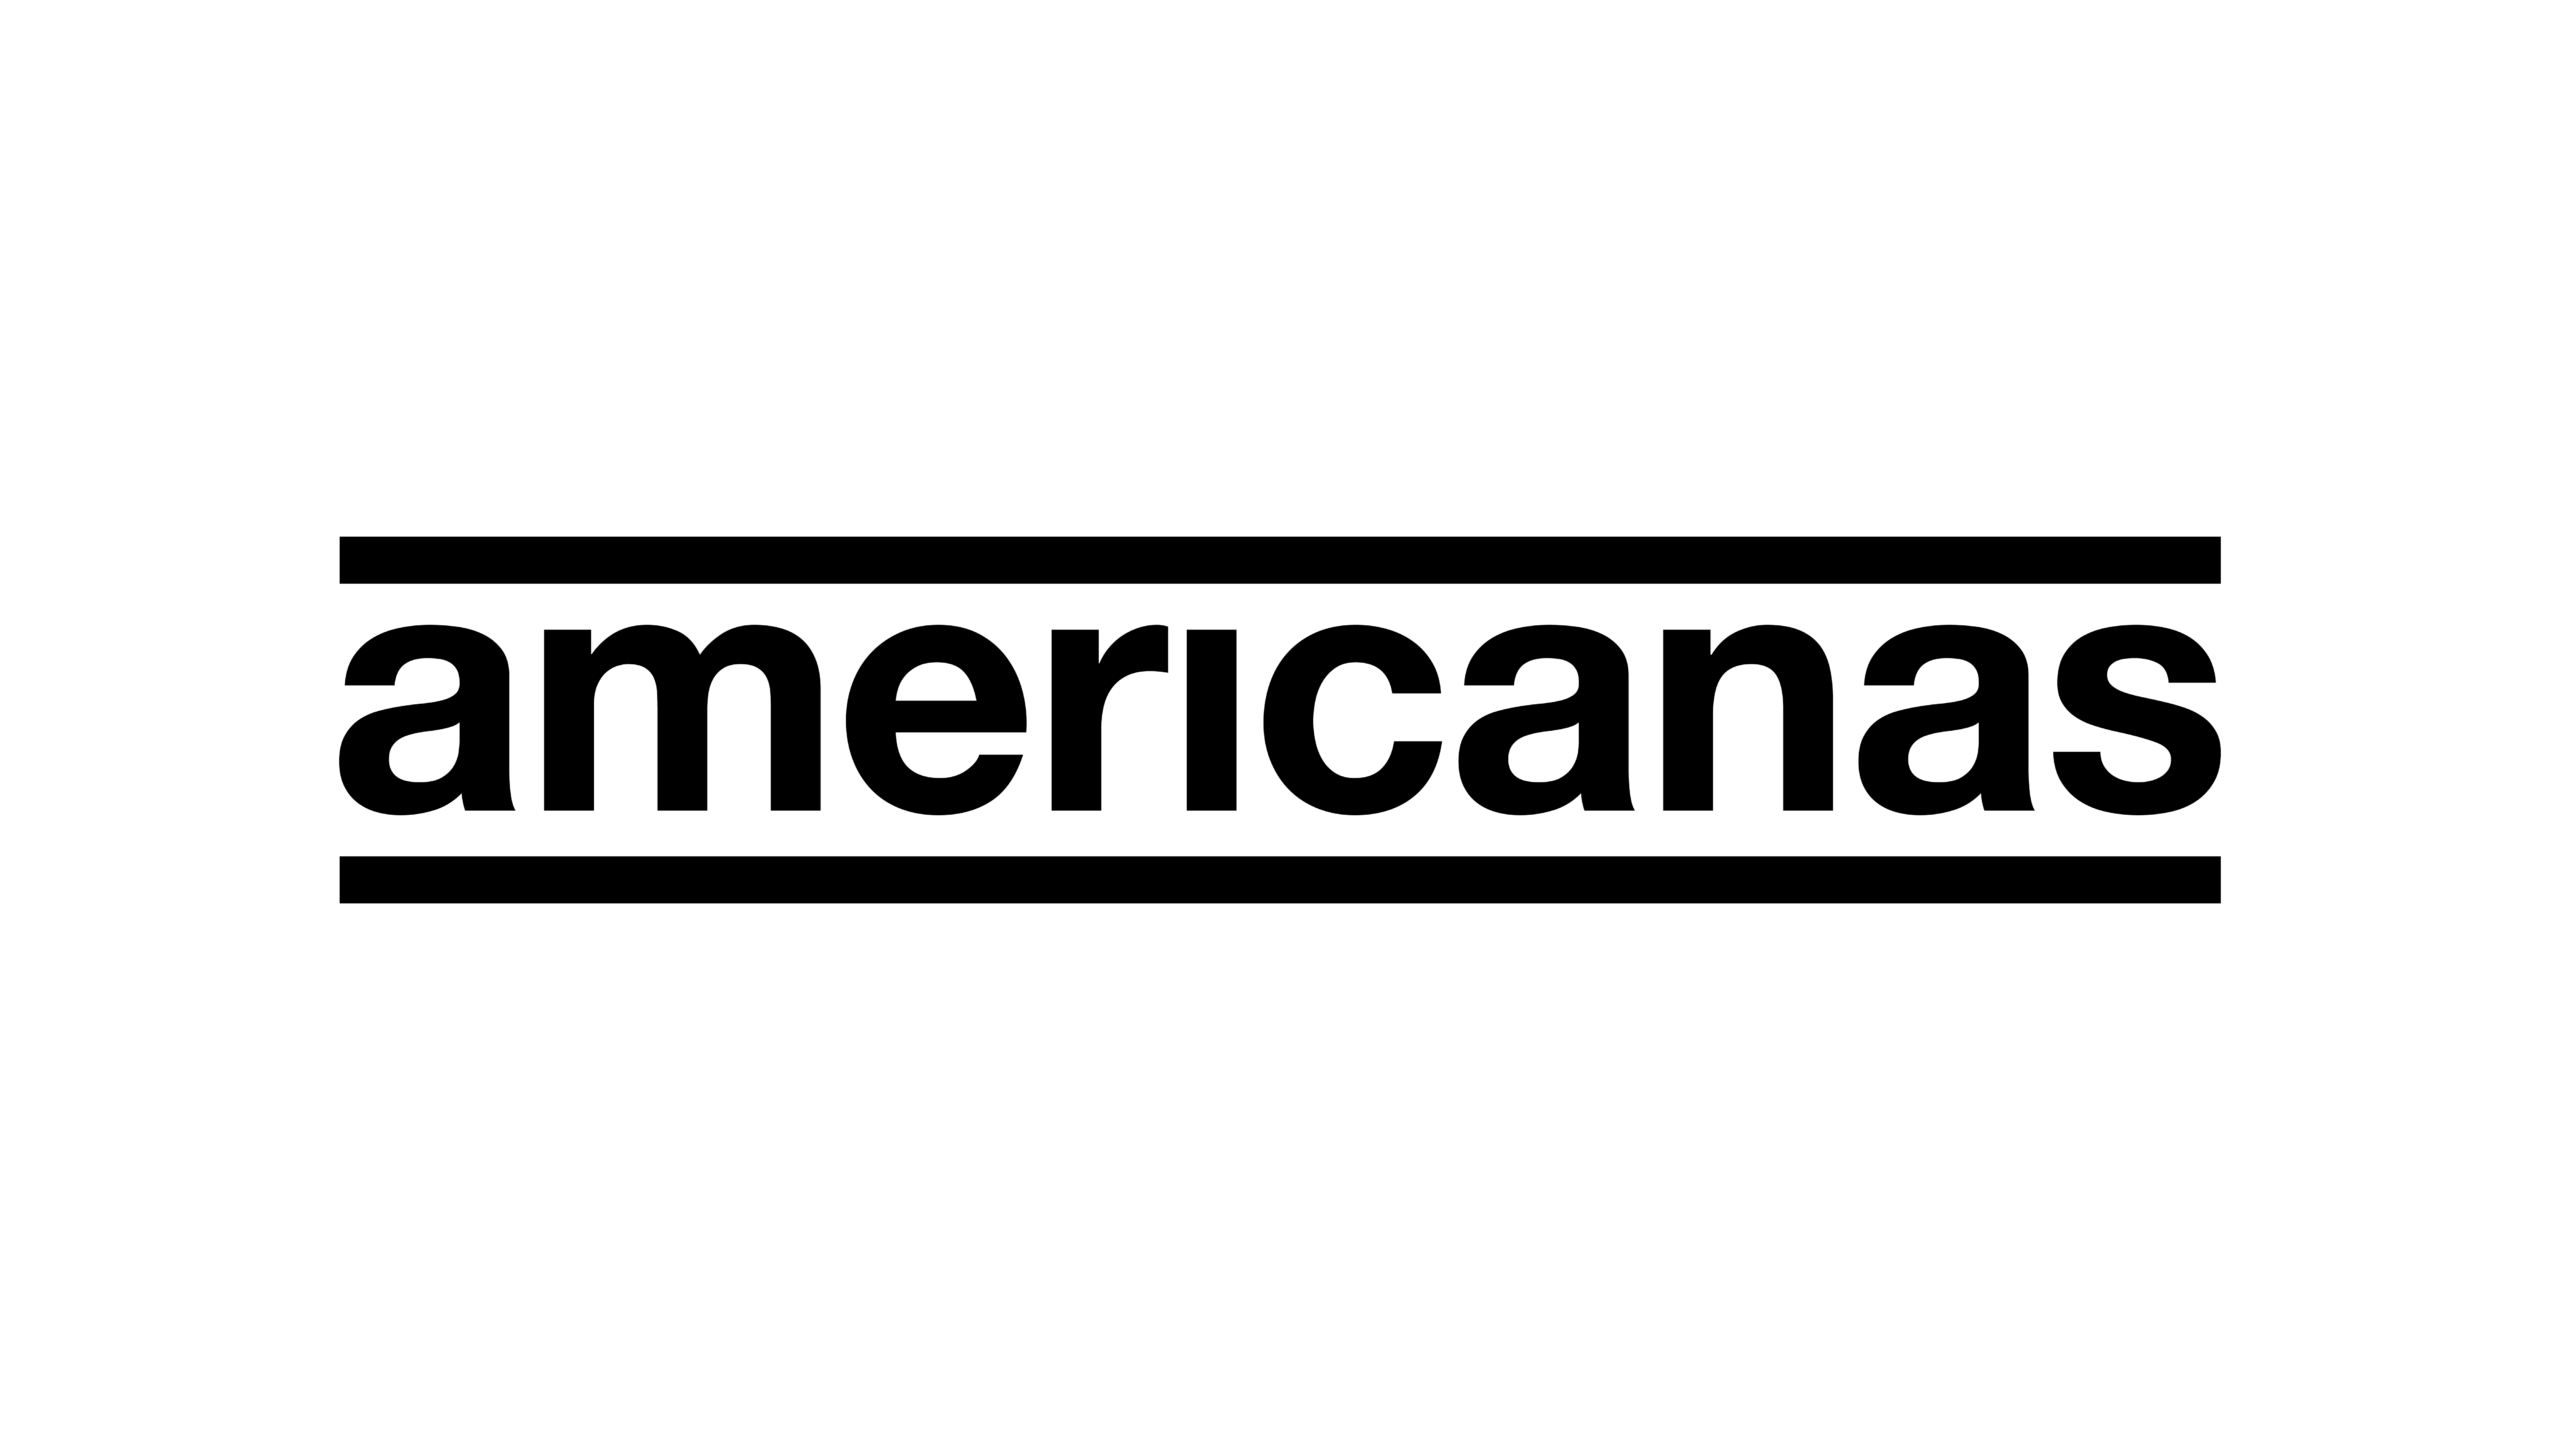 Logotipo da Americanas preto